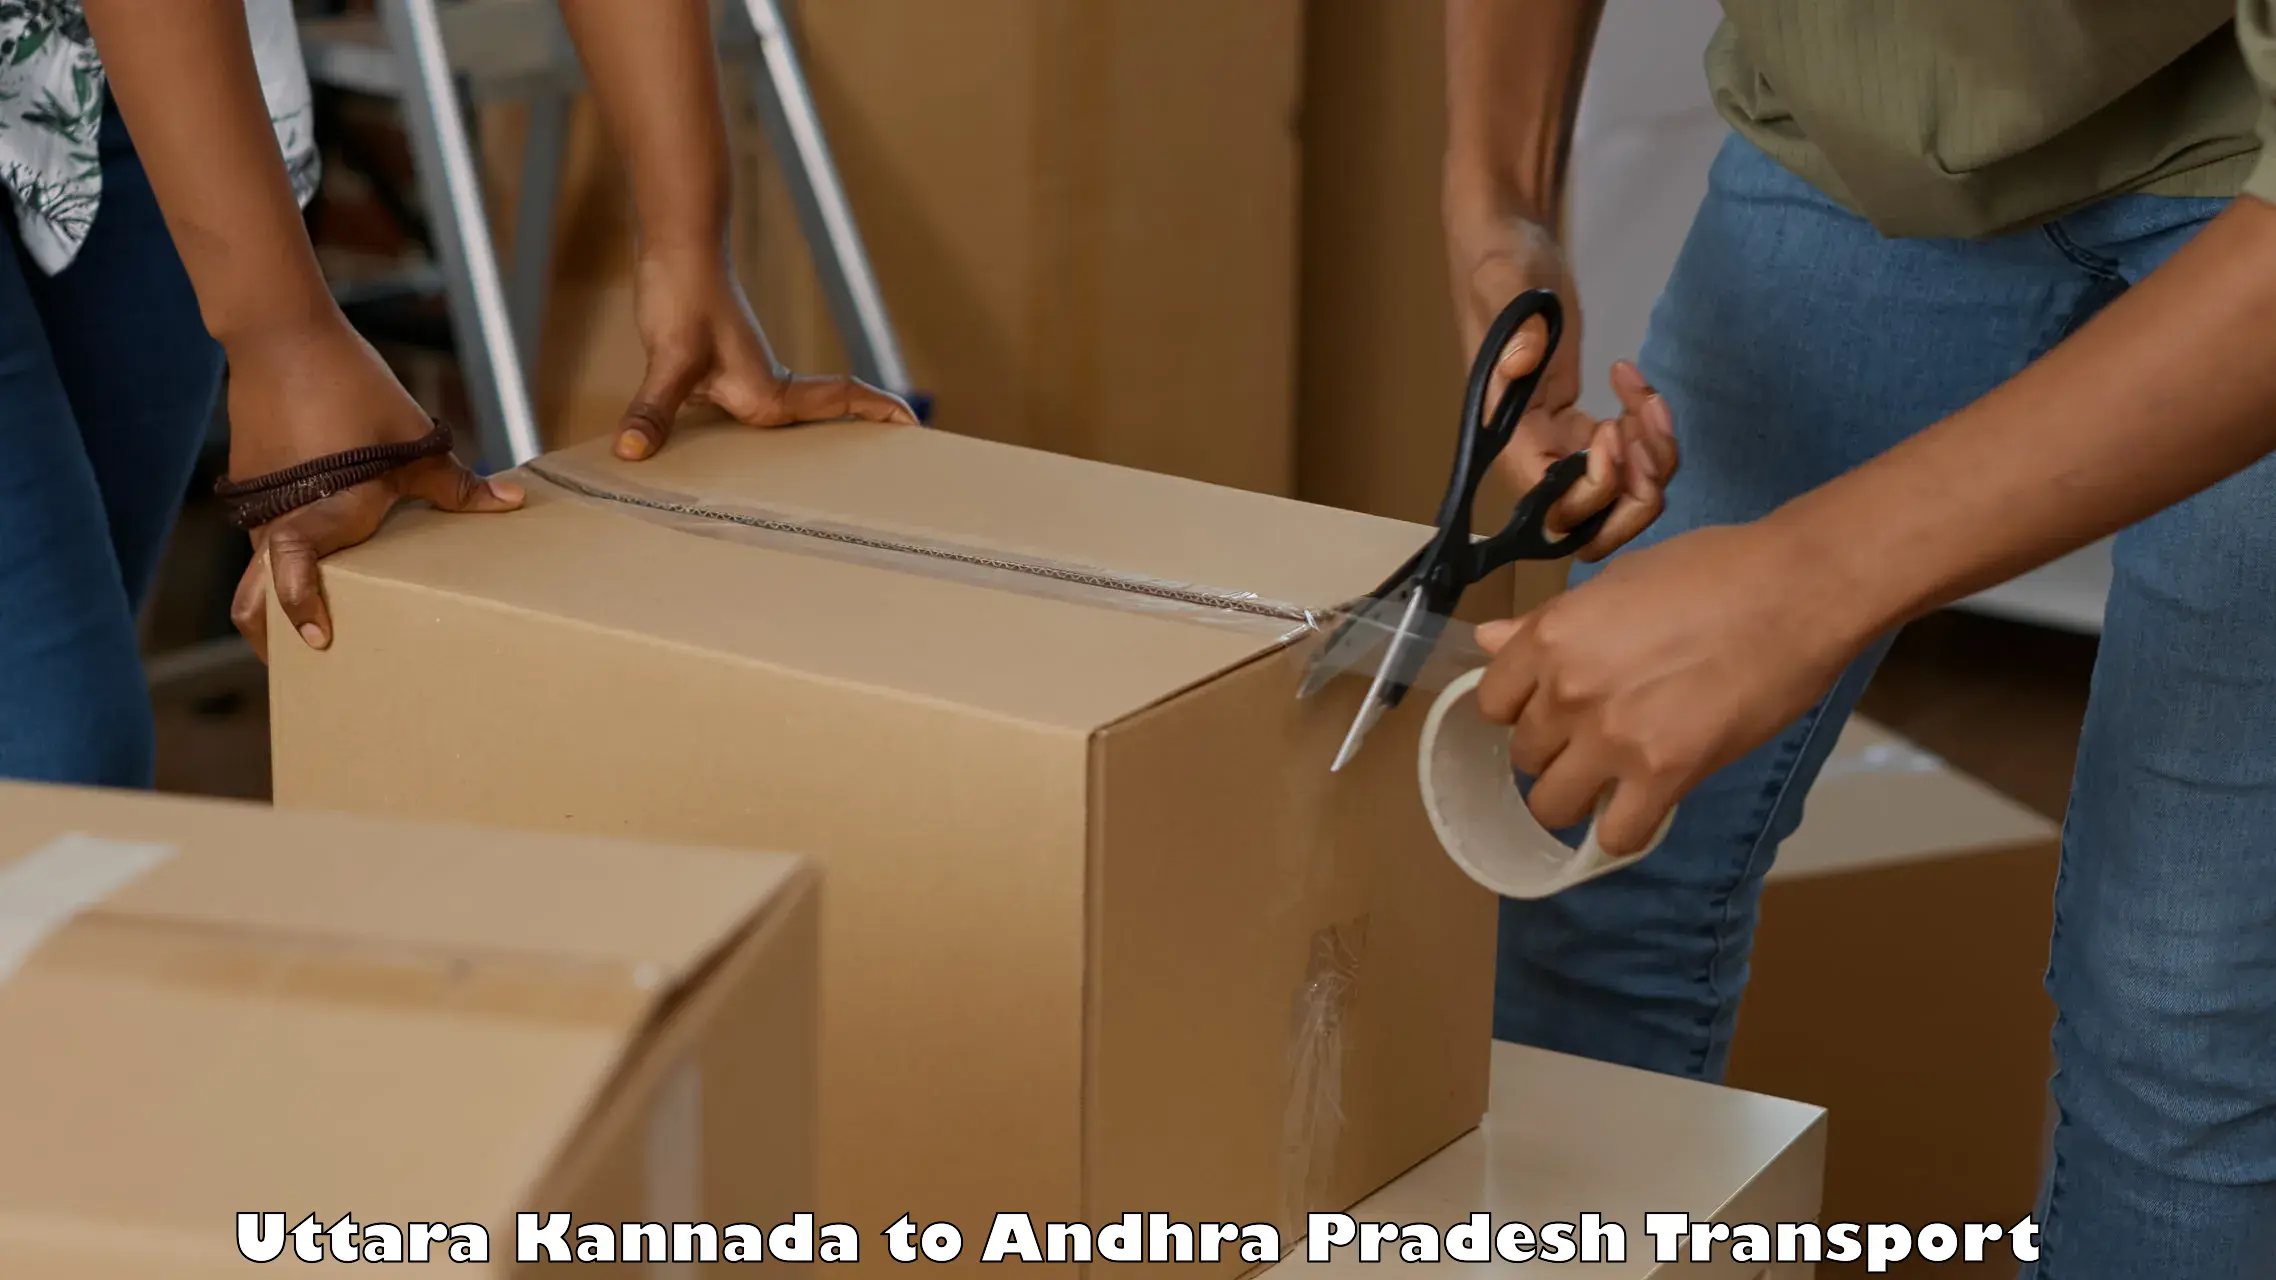 Shipping partner in Uttara Kannada to Bantumilli